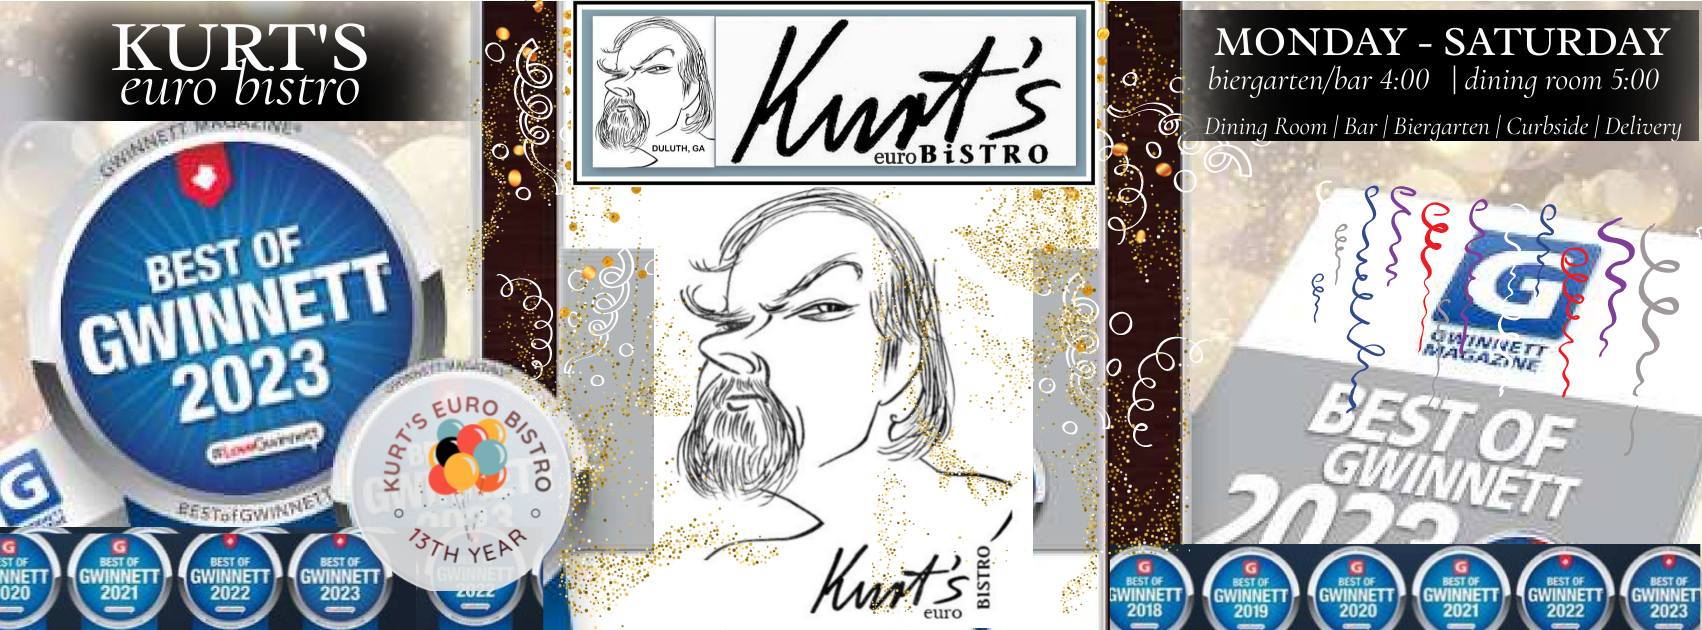 Kurt's Euro Bistro